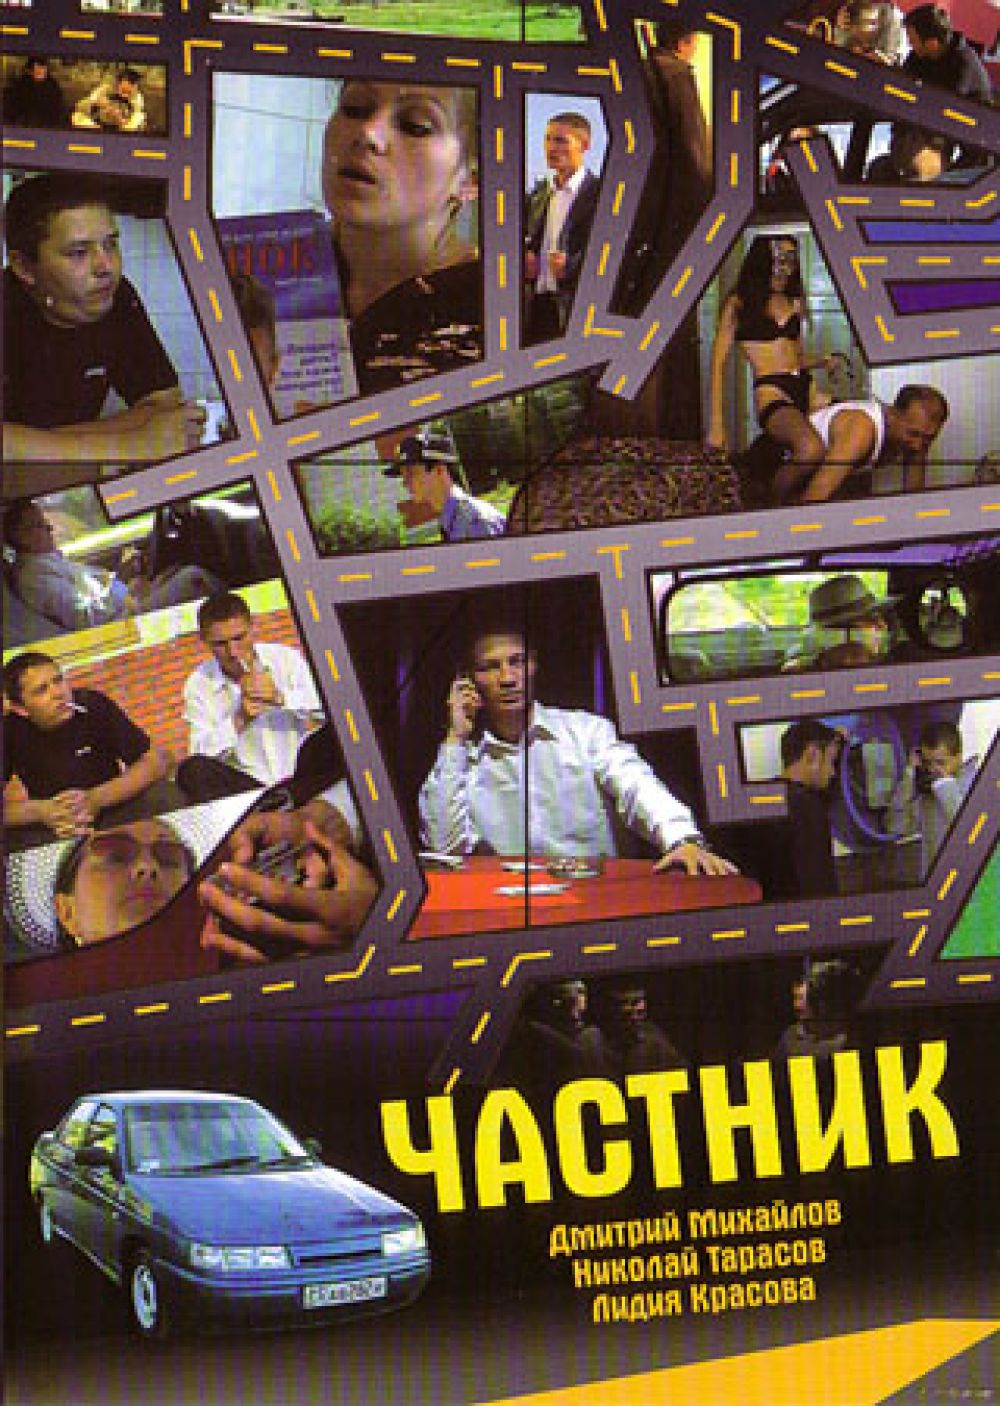  DVD Частник (2005) (Реж. Марат Никитин) - Марат Никитин, Дмитрий Михайлов